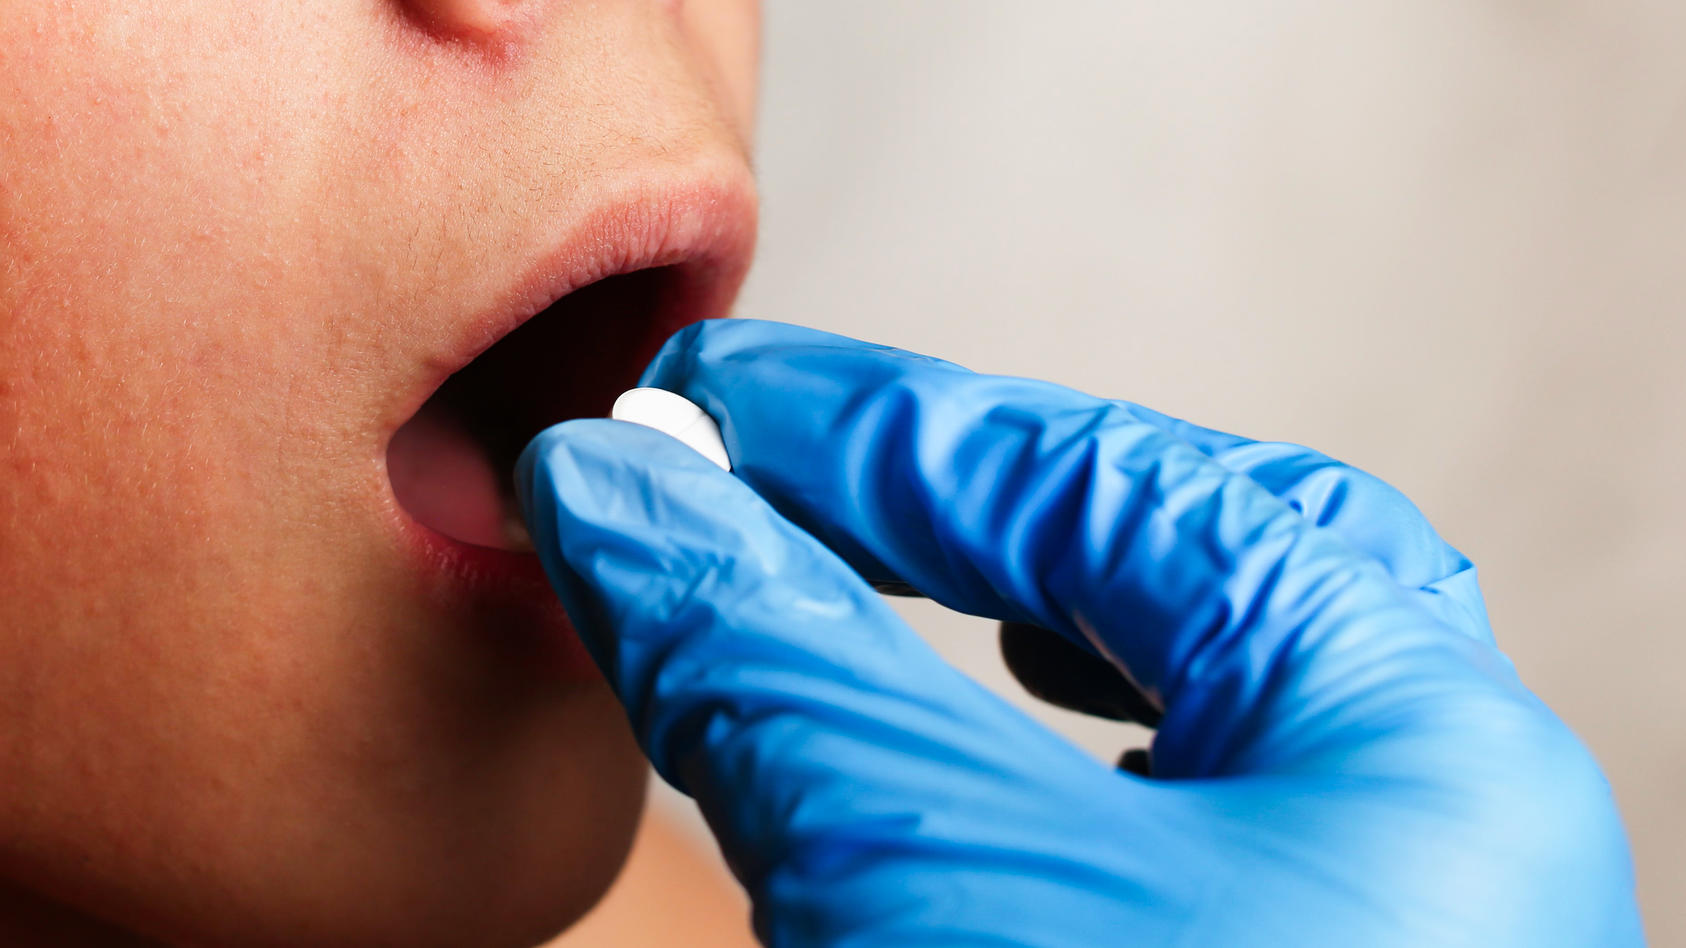 Arzt legt Tablette in Mund eines Patienten